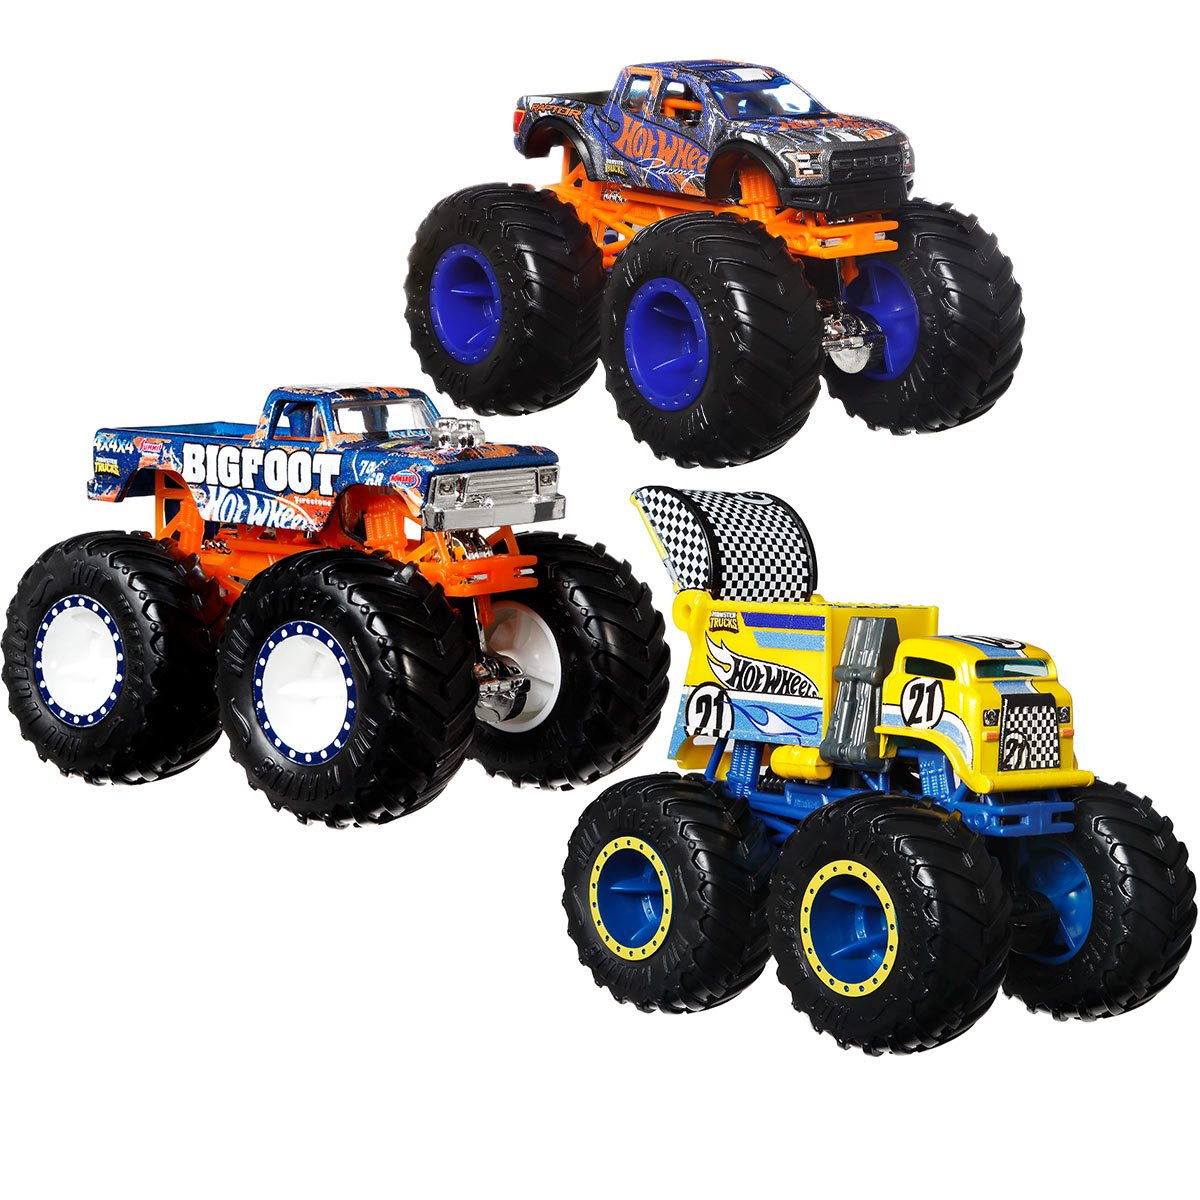 Hot Wheels Monster Trucks - Mattel